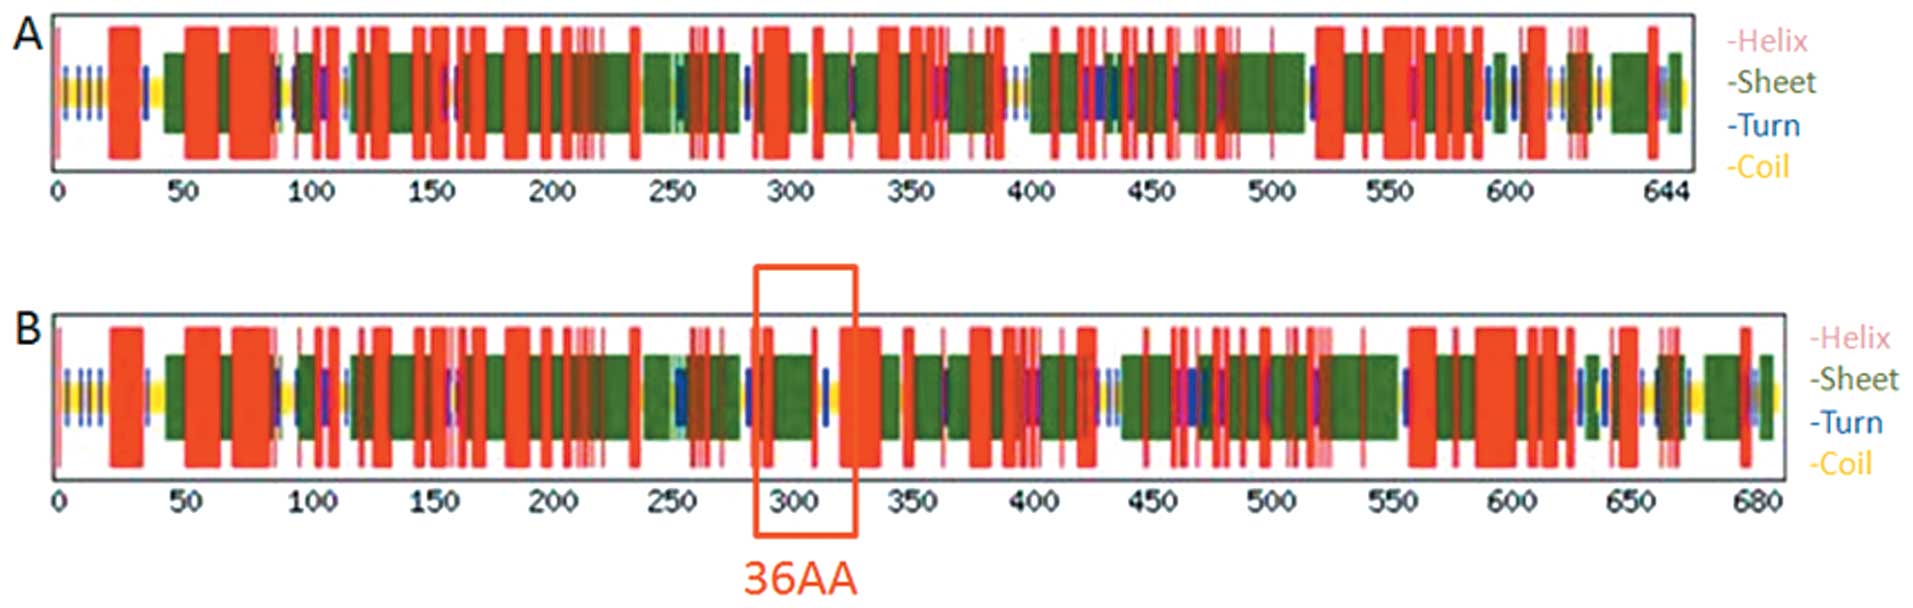 Identification of a novel transcript isoform of the TTLL12 gene in ...